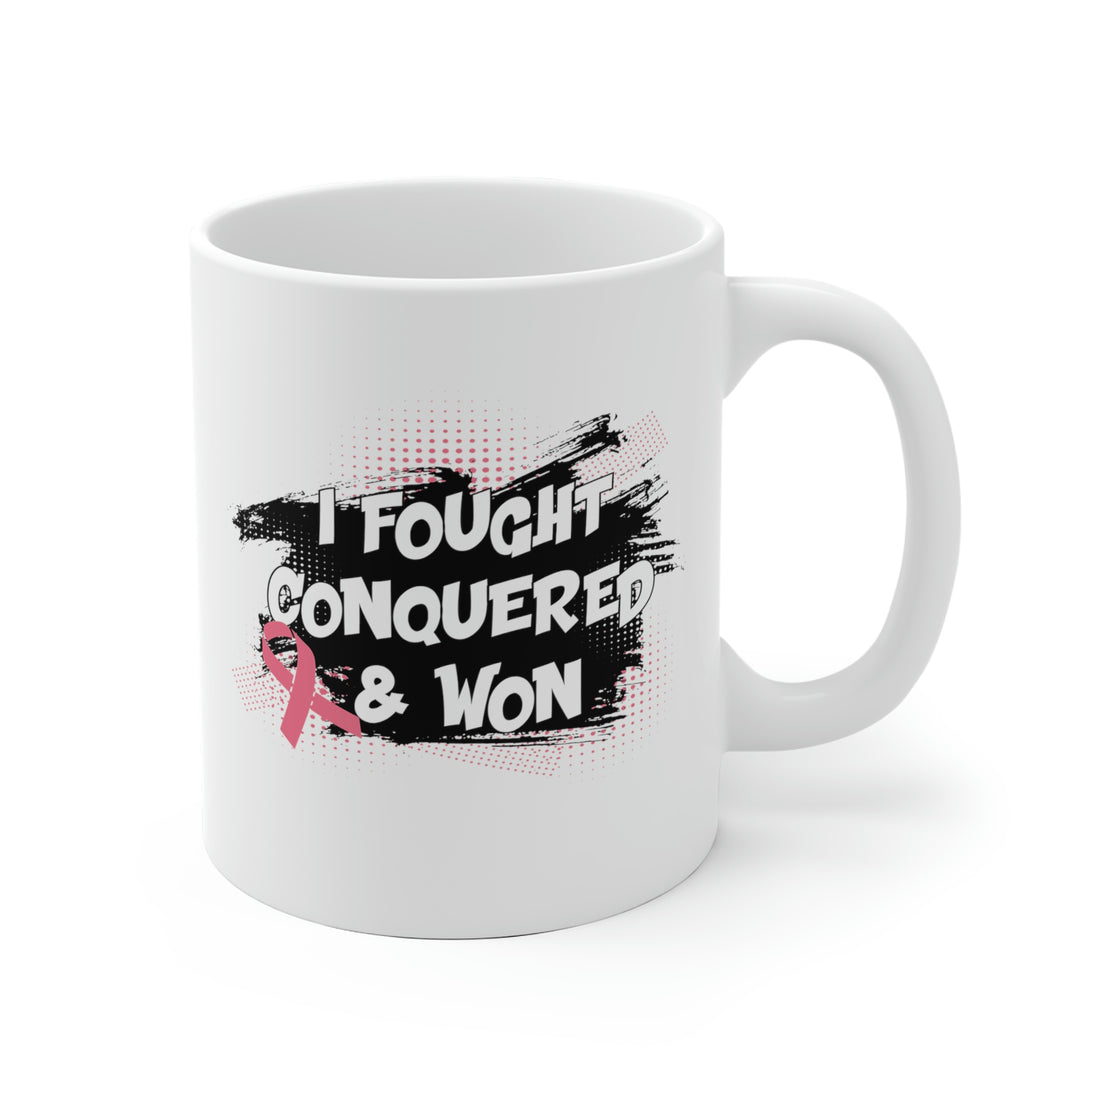 I Fought Conquered &amp; Won - White Ceramic Mug 2 sizes Available